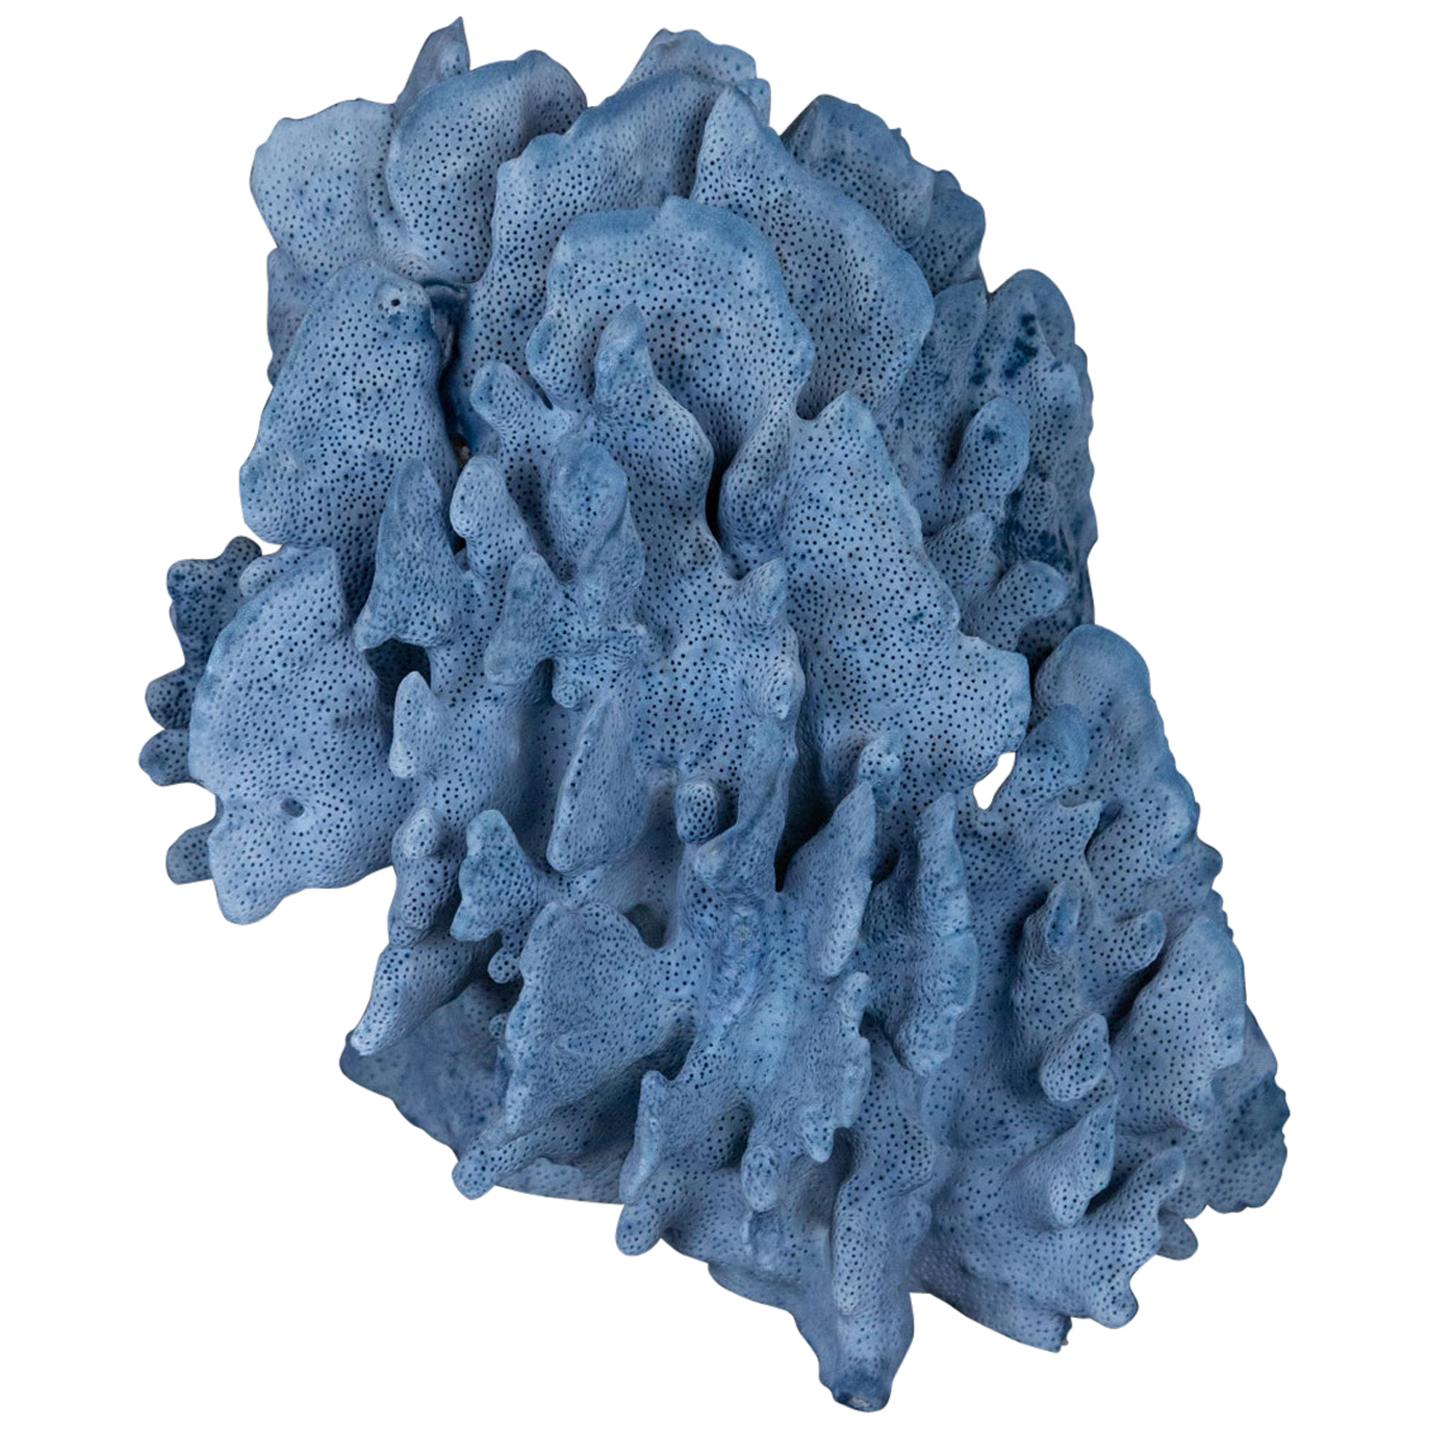 Medium Blue Coral